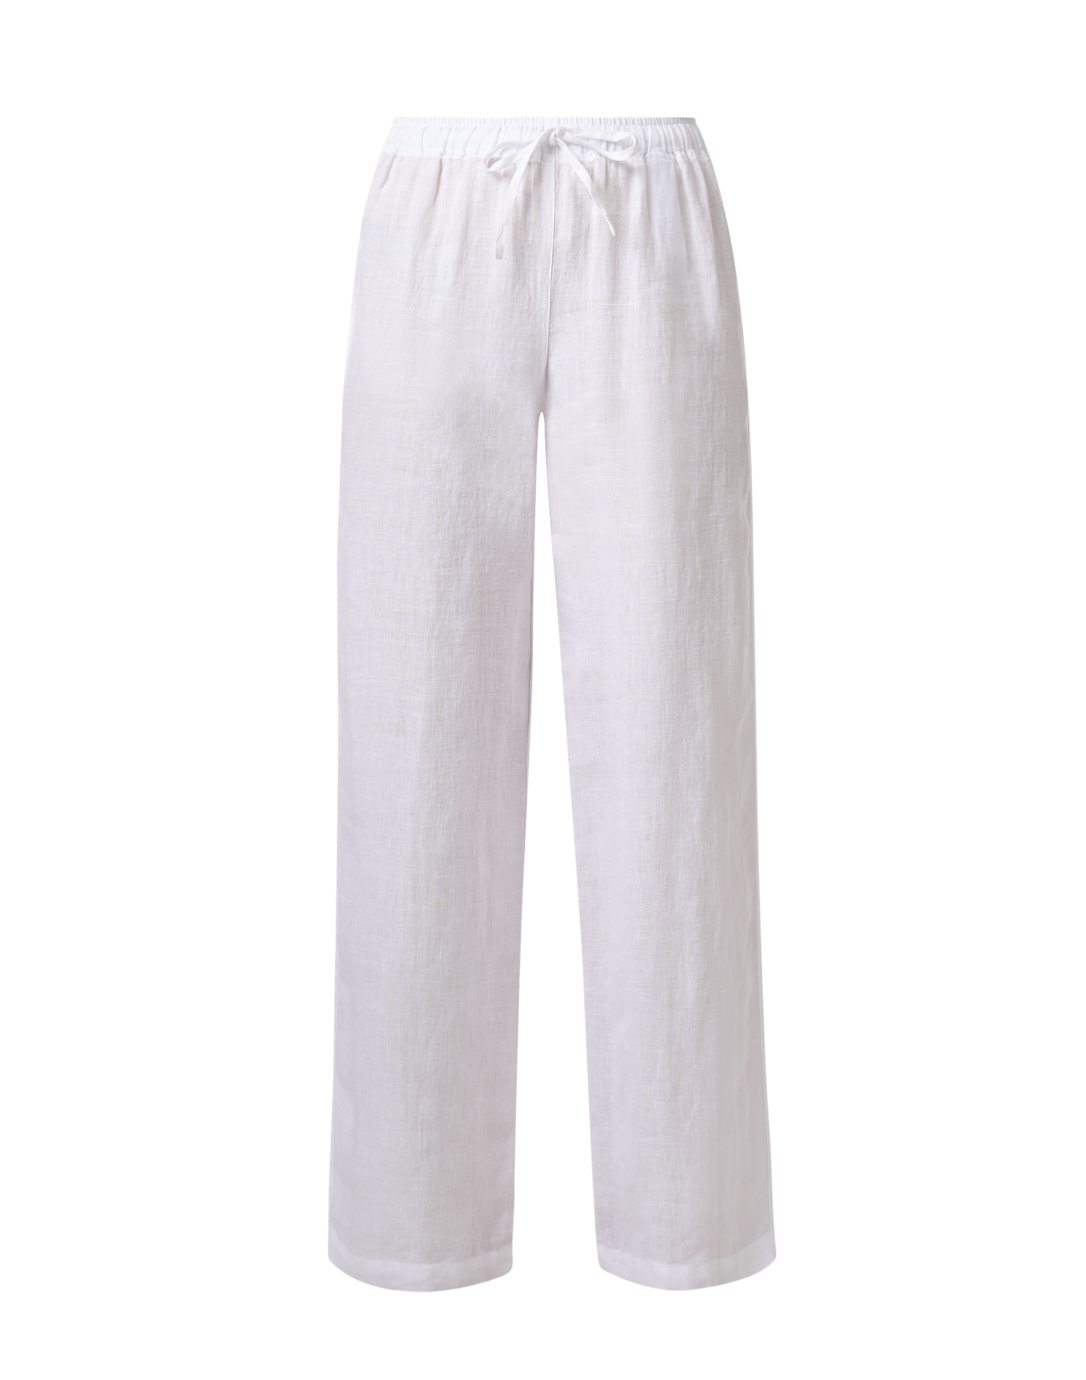 $240 120% Lino Women's White Wide Leg Drawstring Stretch Pants